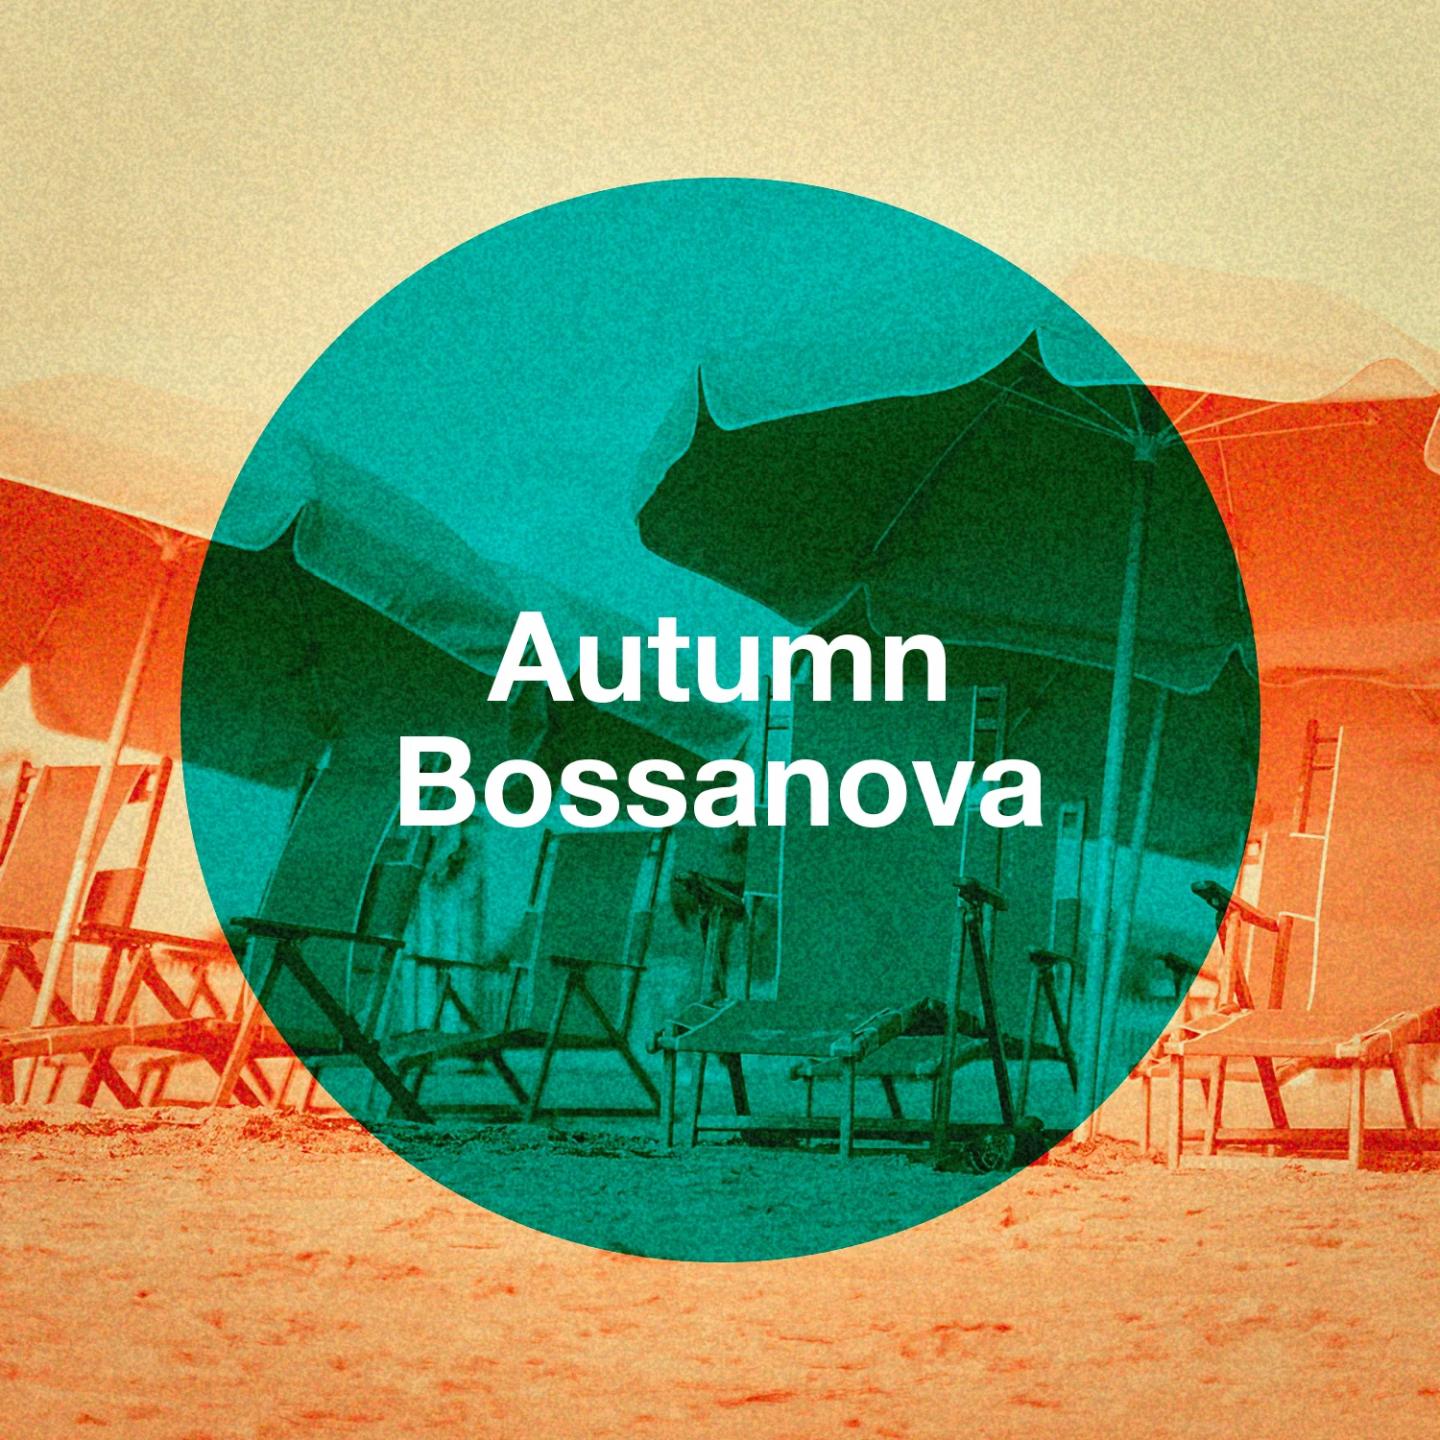 Autumn Bossanova